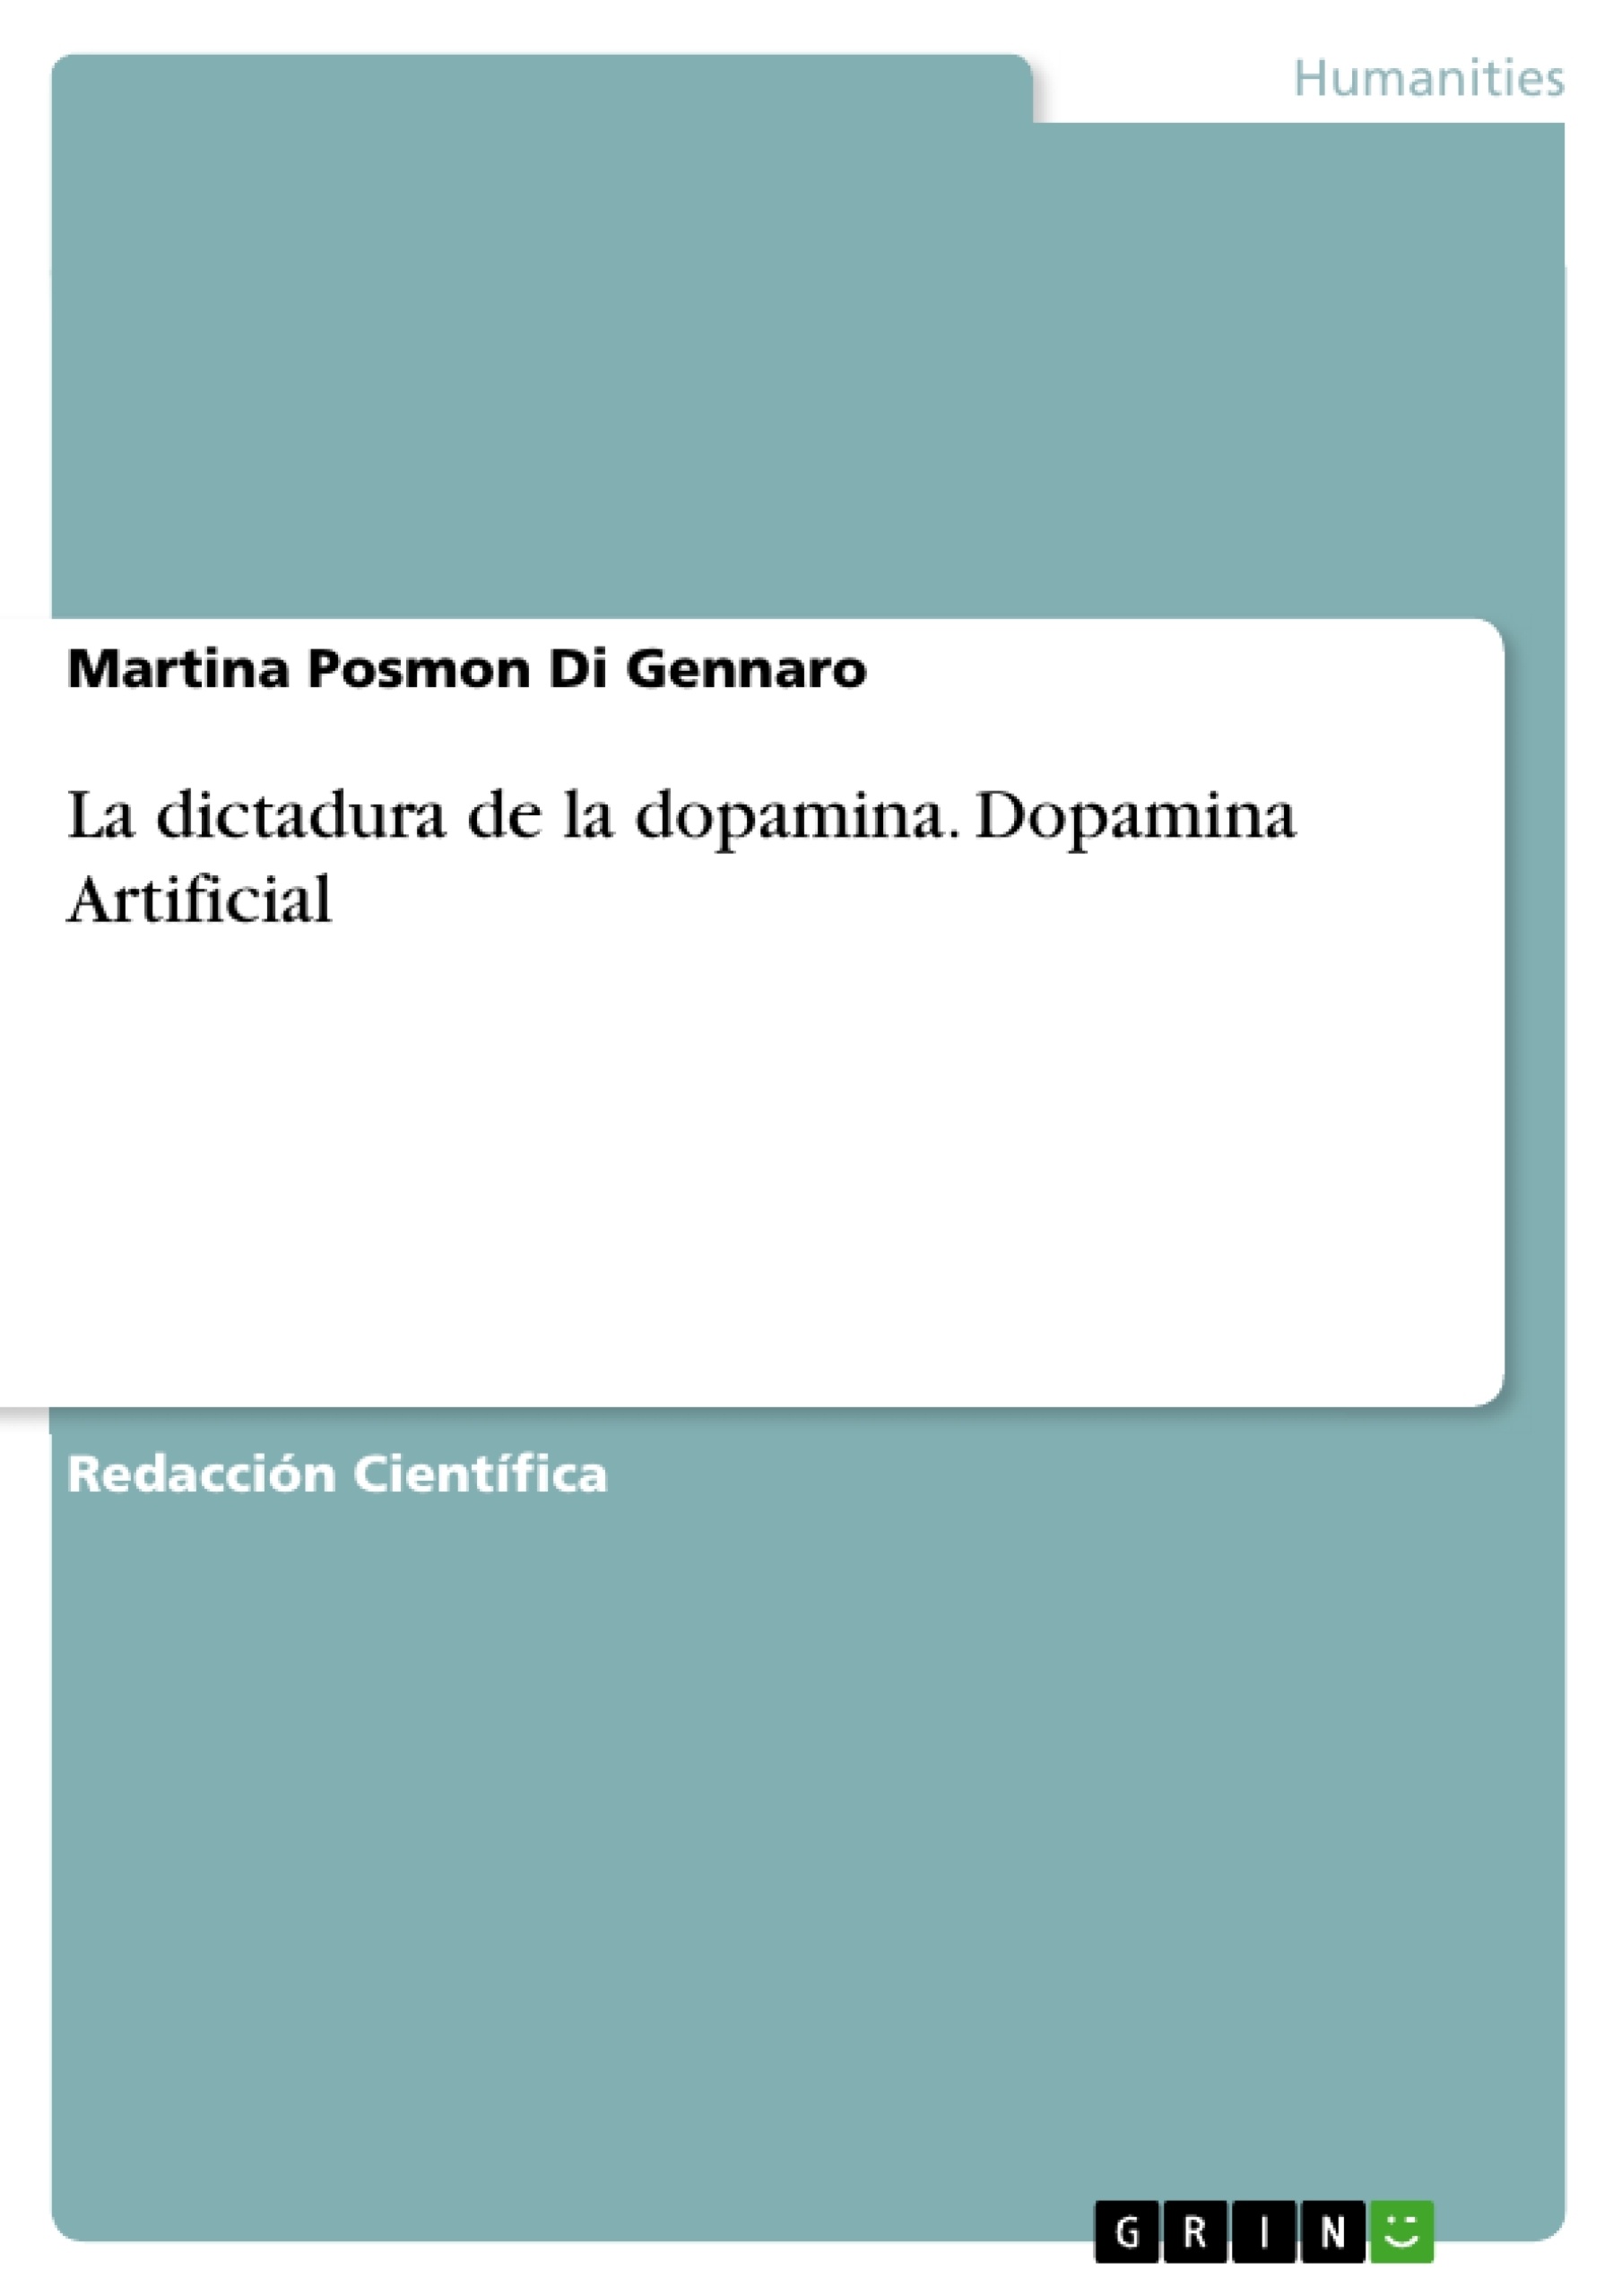 Título: La dictadura de la dopamina. Dopamina Artificial